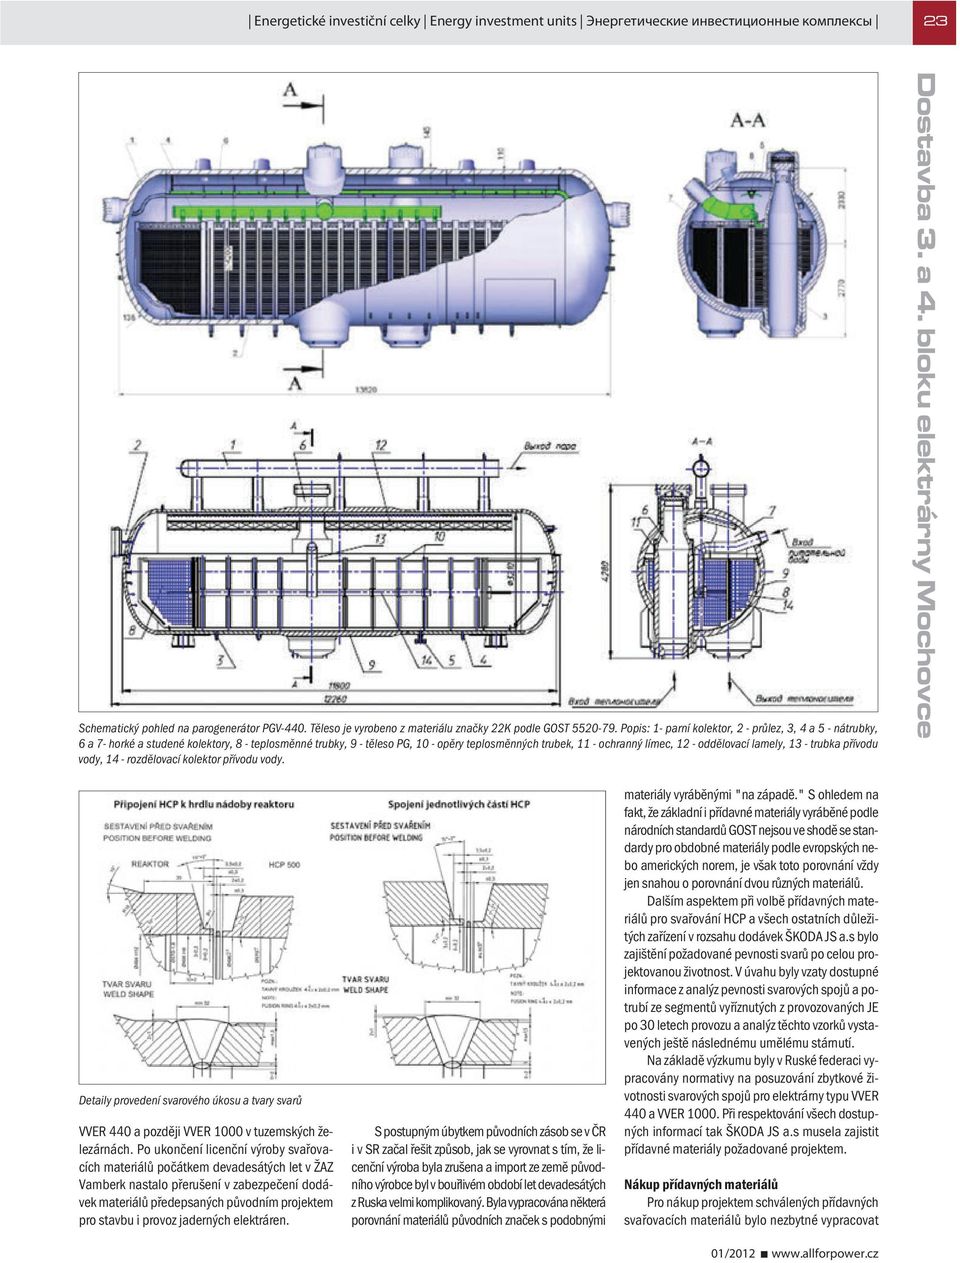 oddělovací lamely, 13 - trubka přívodu vody, 14 - rozdělovací kolektor přívodu vody. Detaily provedení svarového úkosu a tvary svarů VVER 440 a později VVER 1000 v tuzemských železárnách.